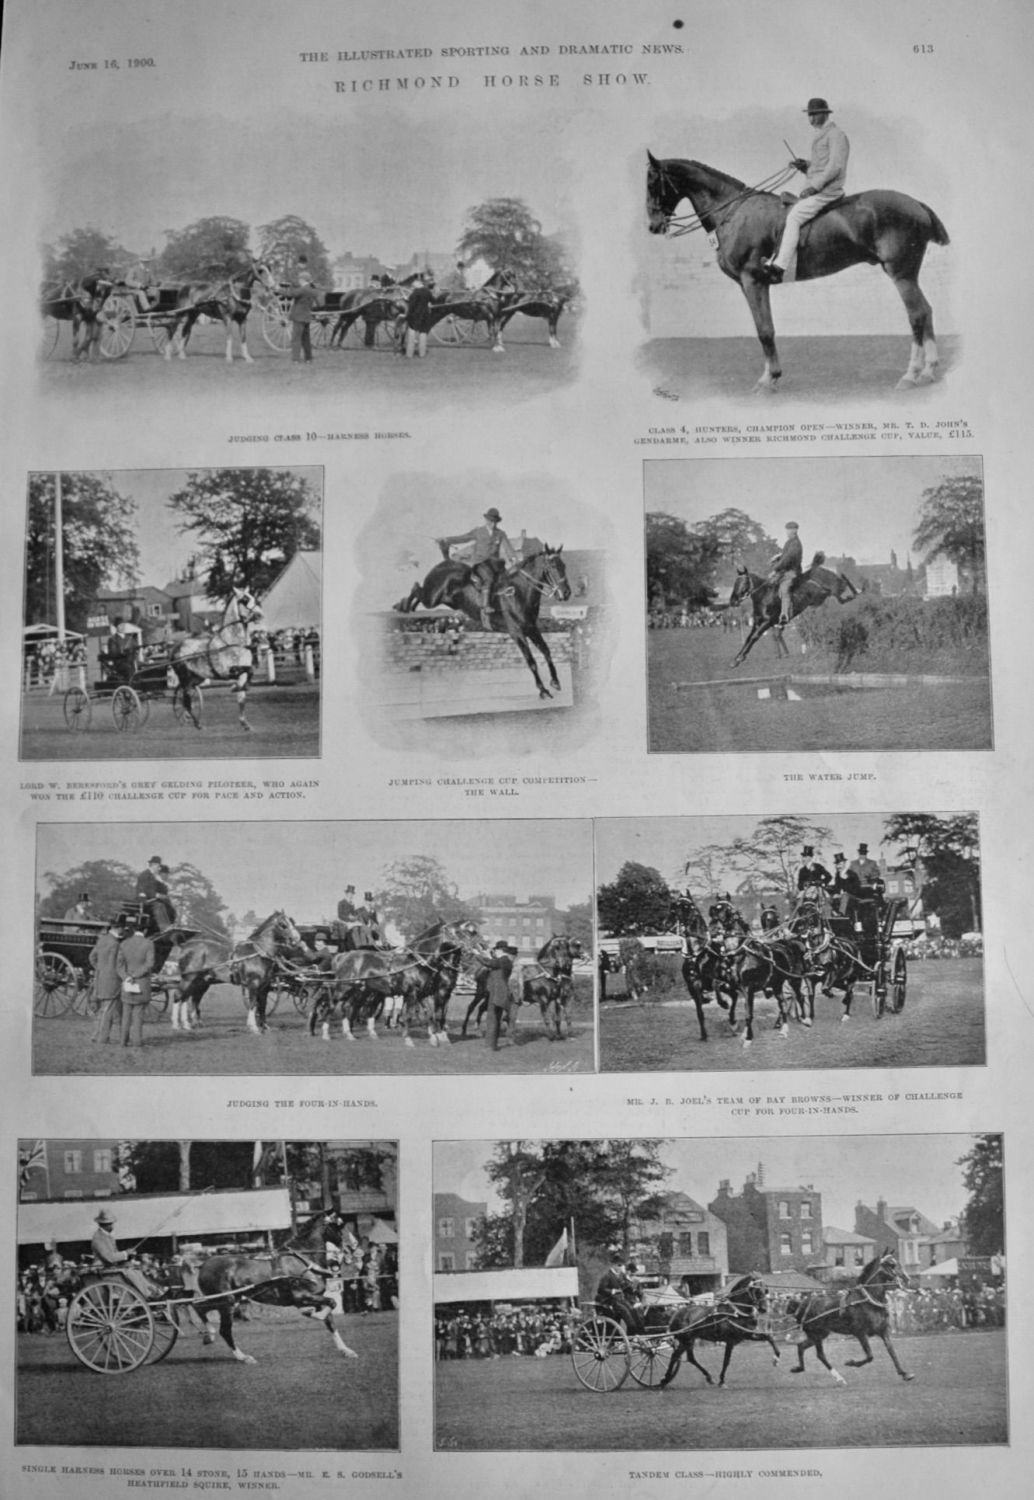 Richmond Horse Show.  1900.